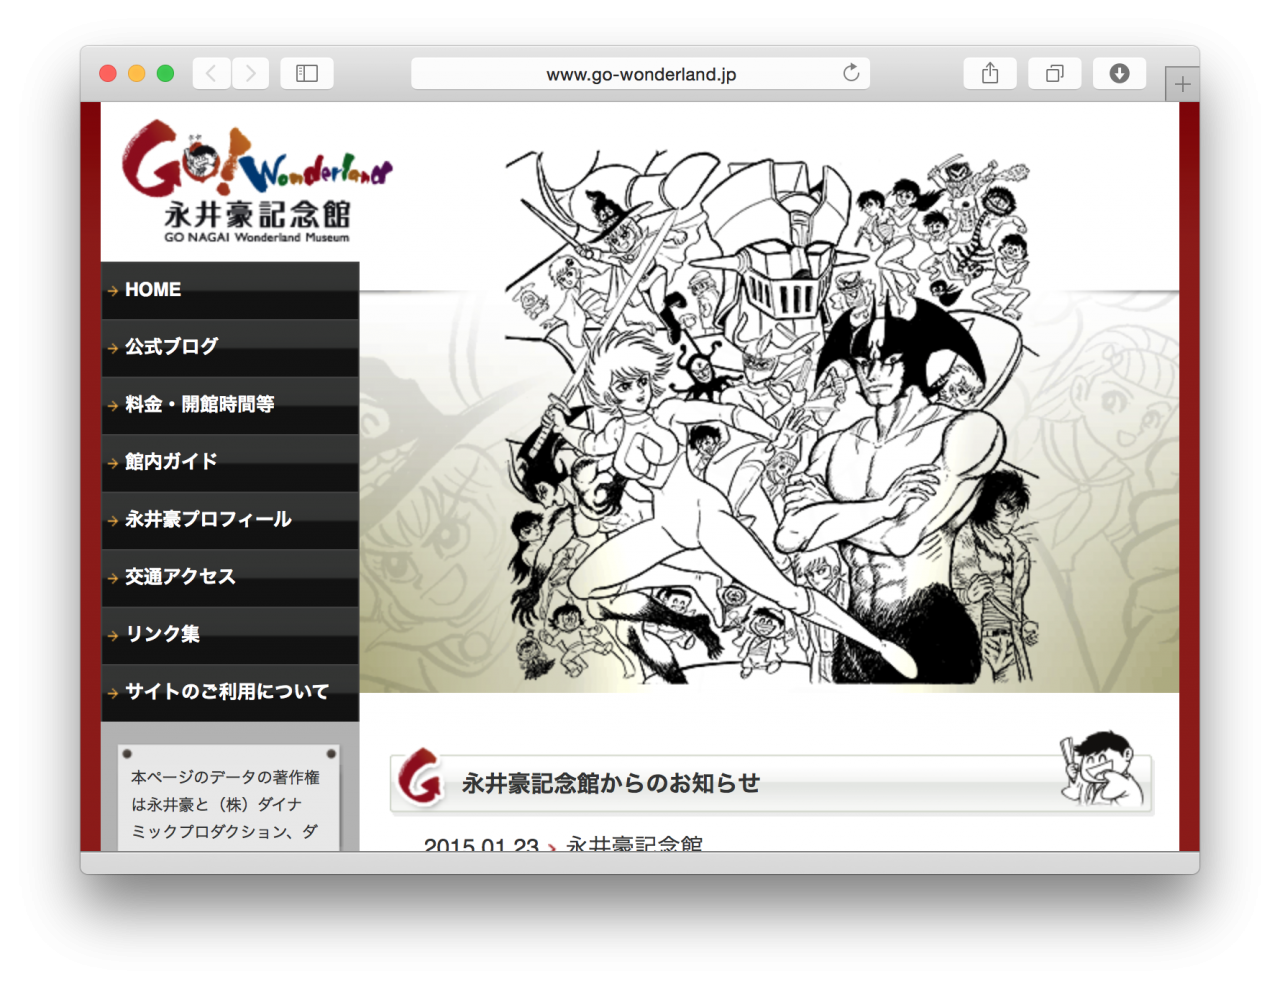 Go Nagai official site "Go-Wonderland"